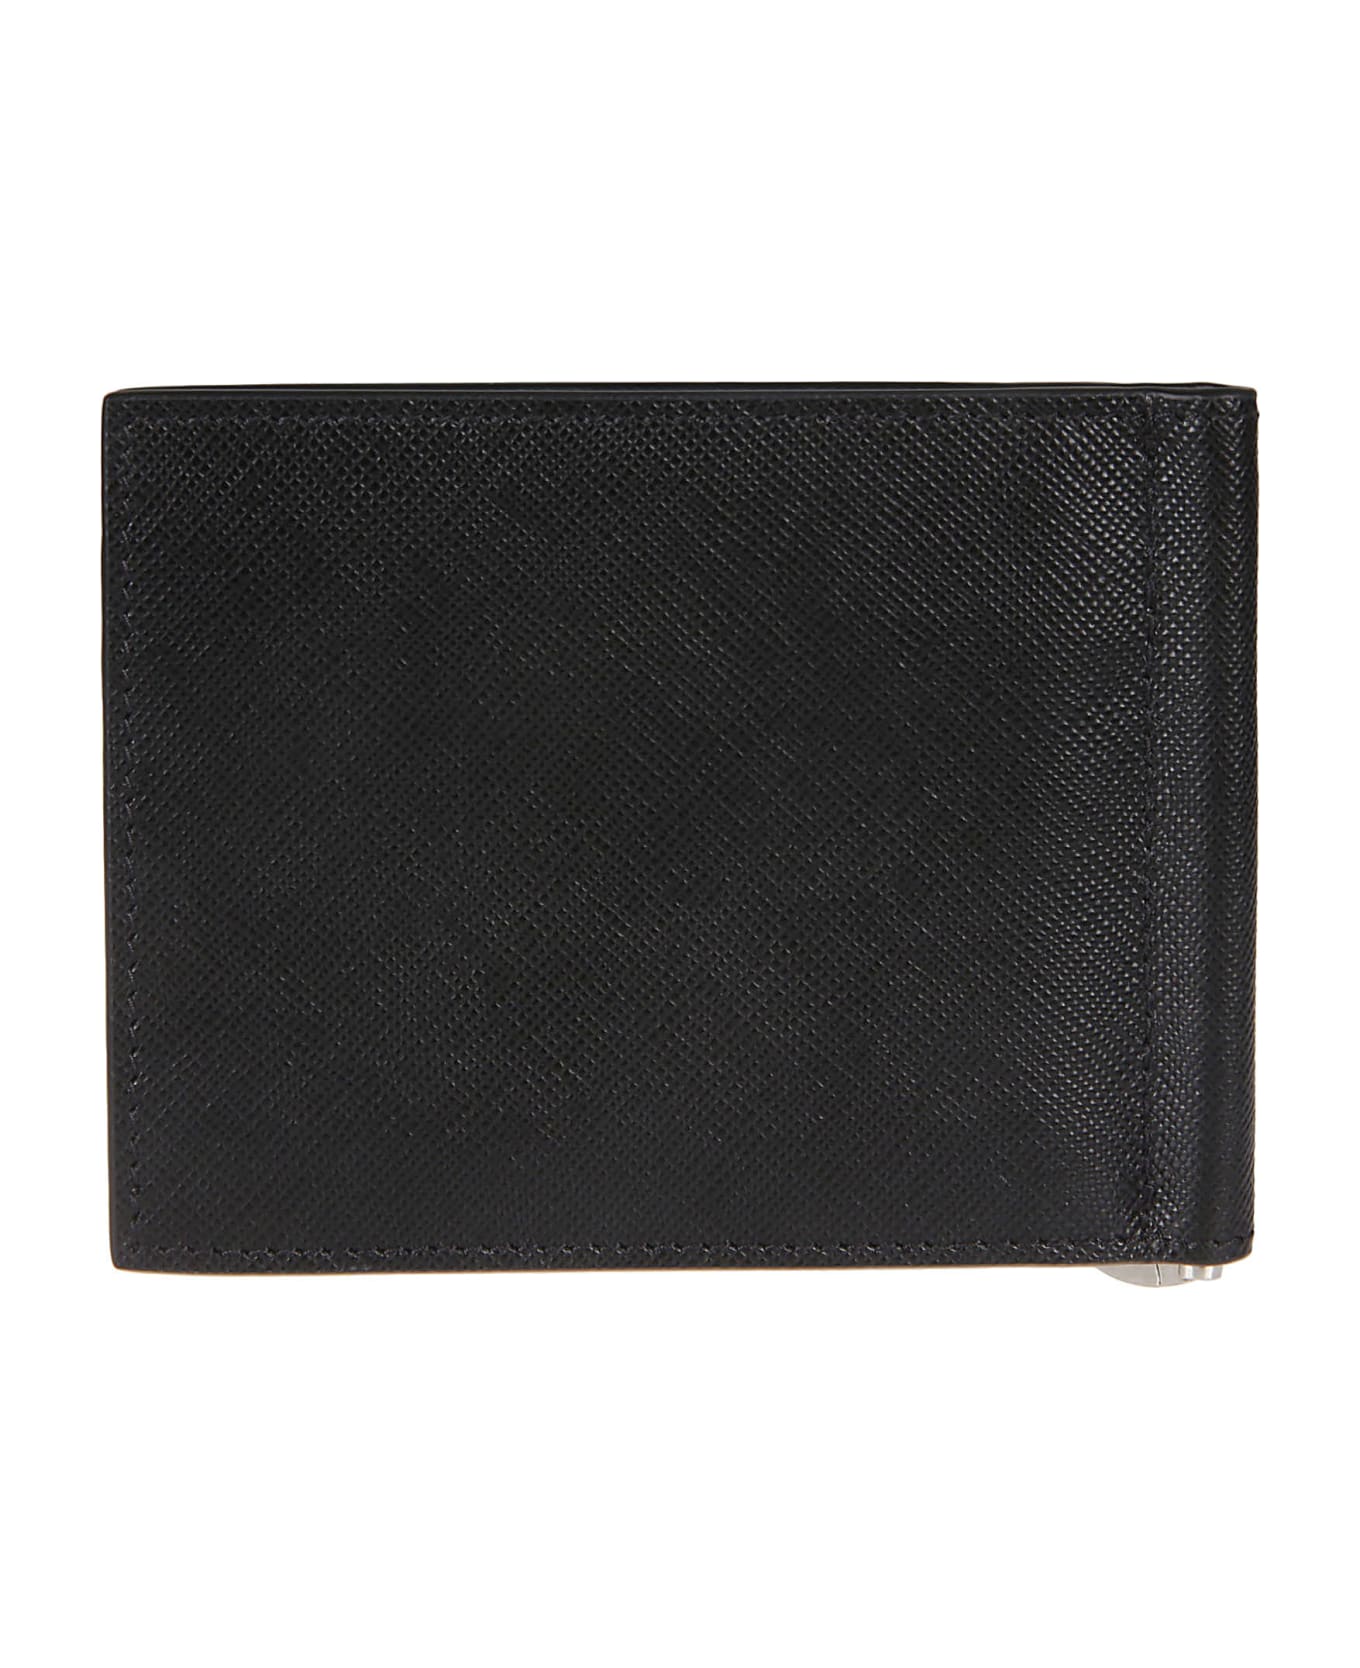 Kiton A013 Wallet - Nero 財布